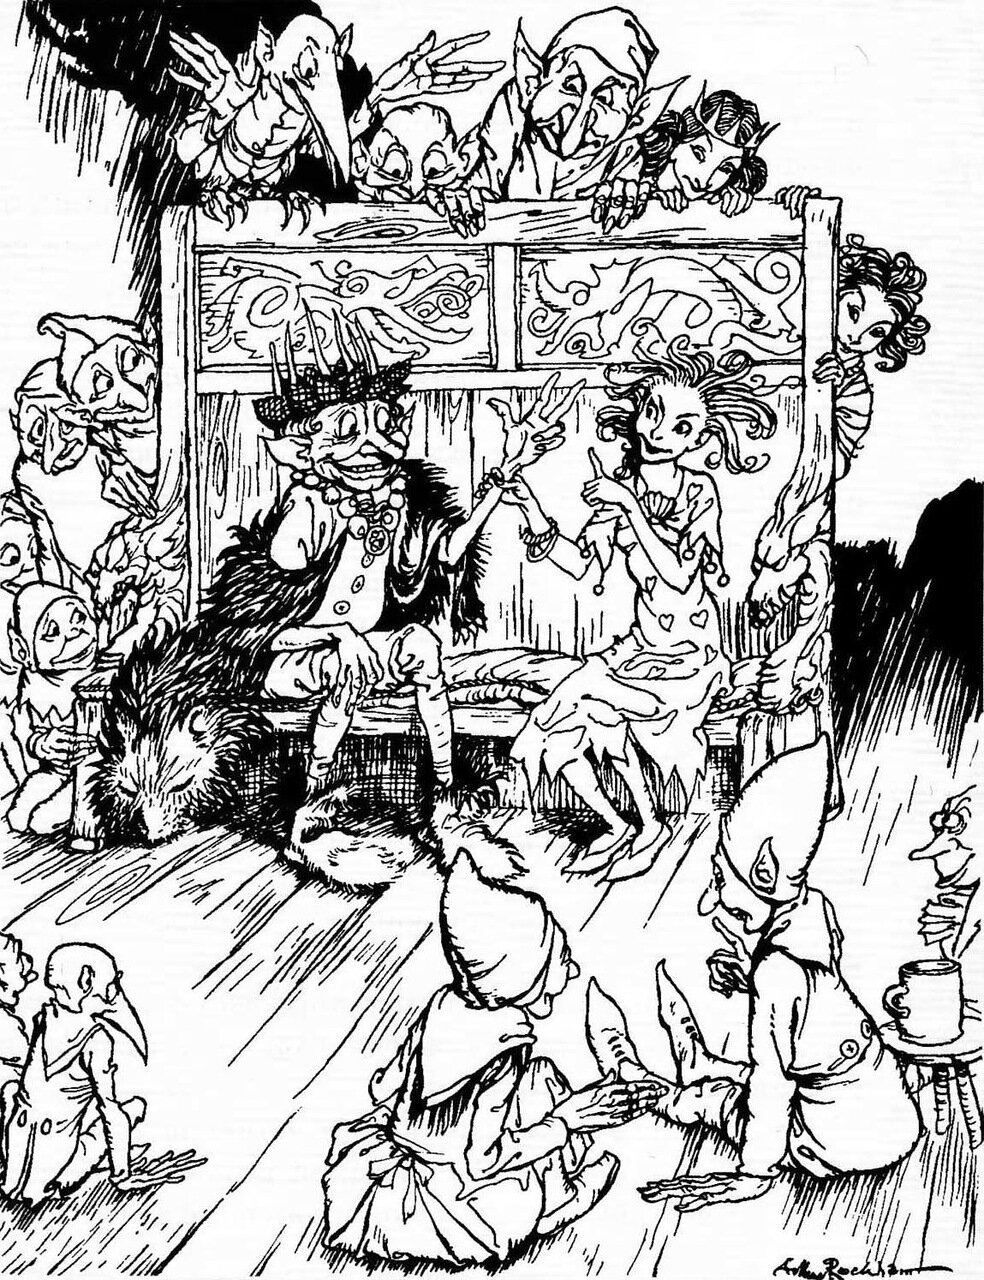 Иллюстрации Артура Рэкхема к сказке «Волшебный холм»